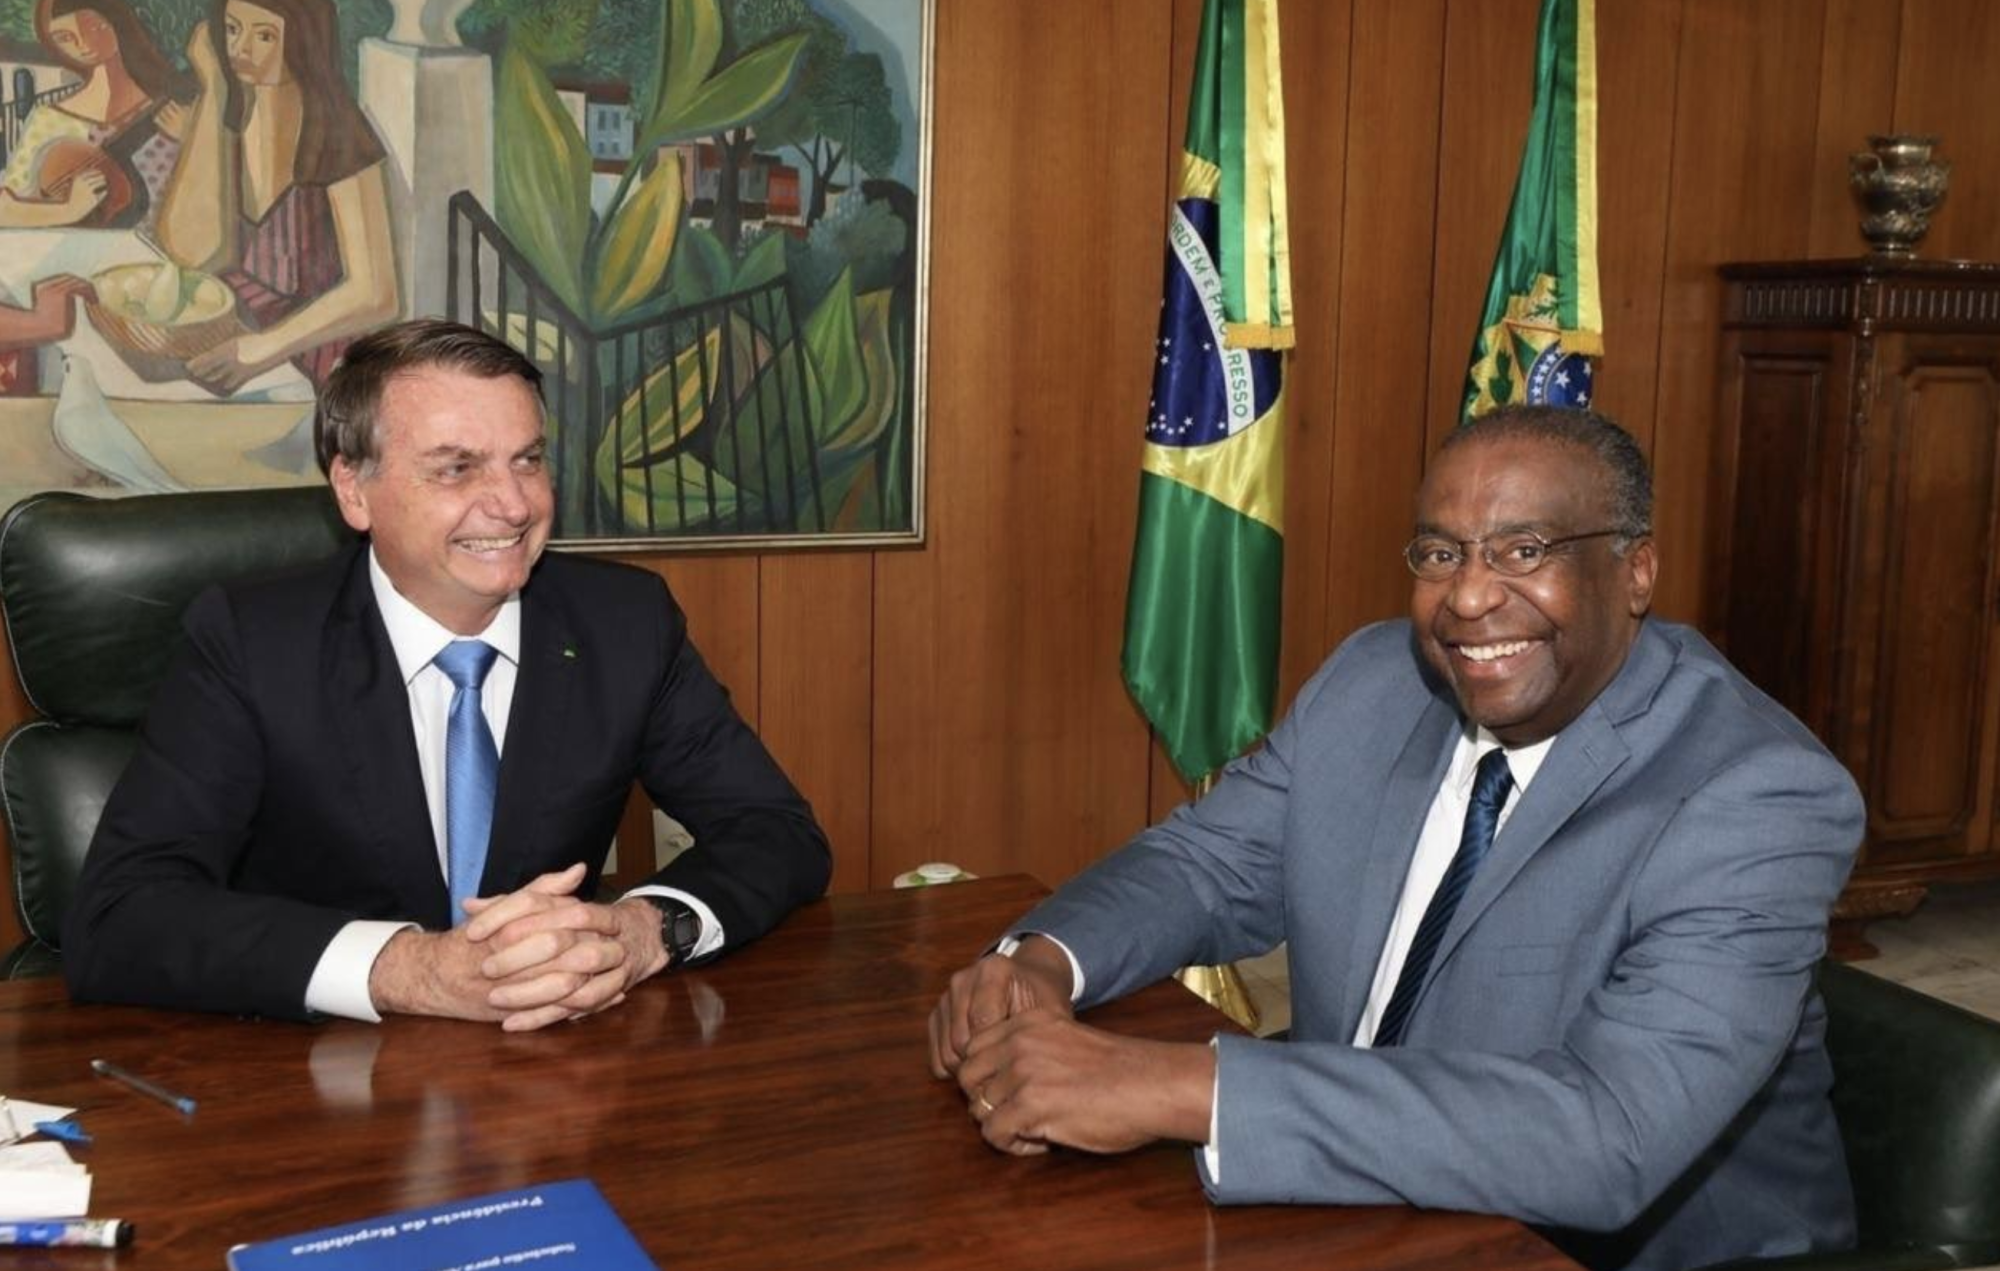 Jair Bolsonaro with&nbsp;Carlos Alberto Decotelli